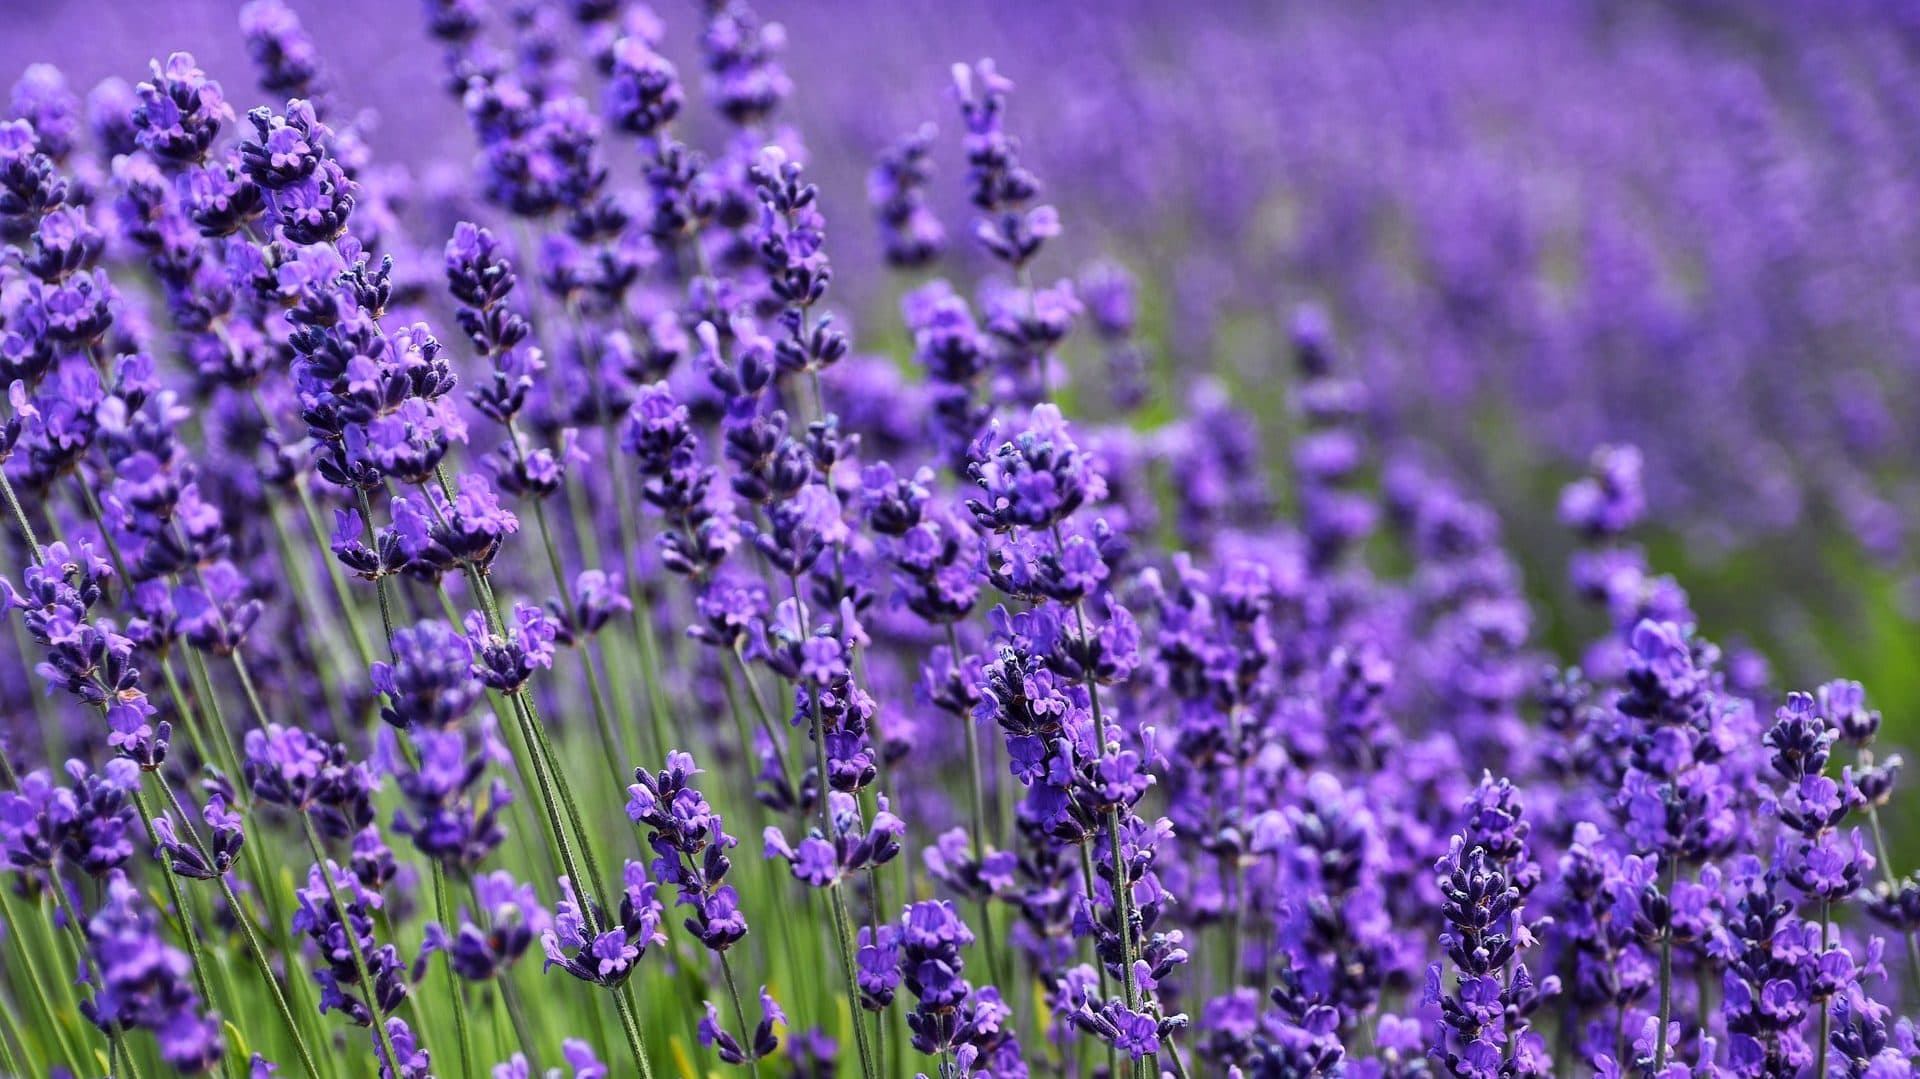 Lavendel in veld, vooraanzicht
